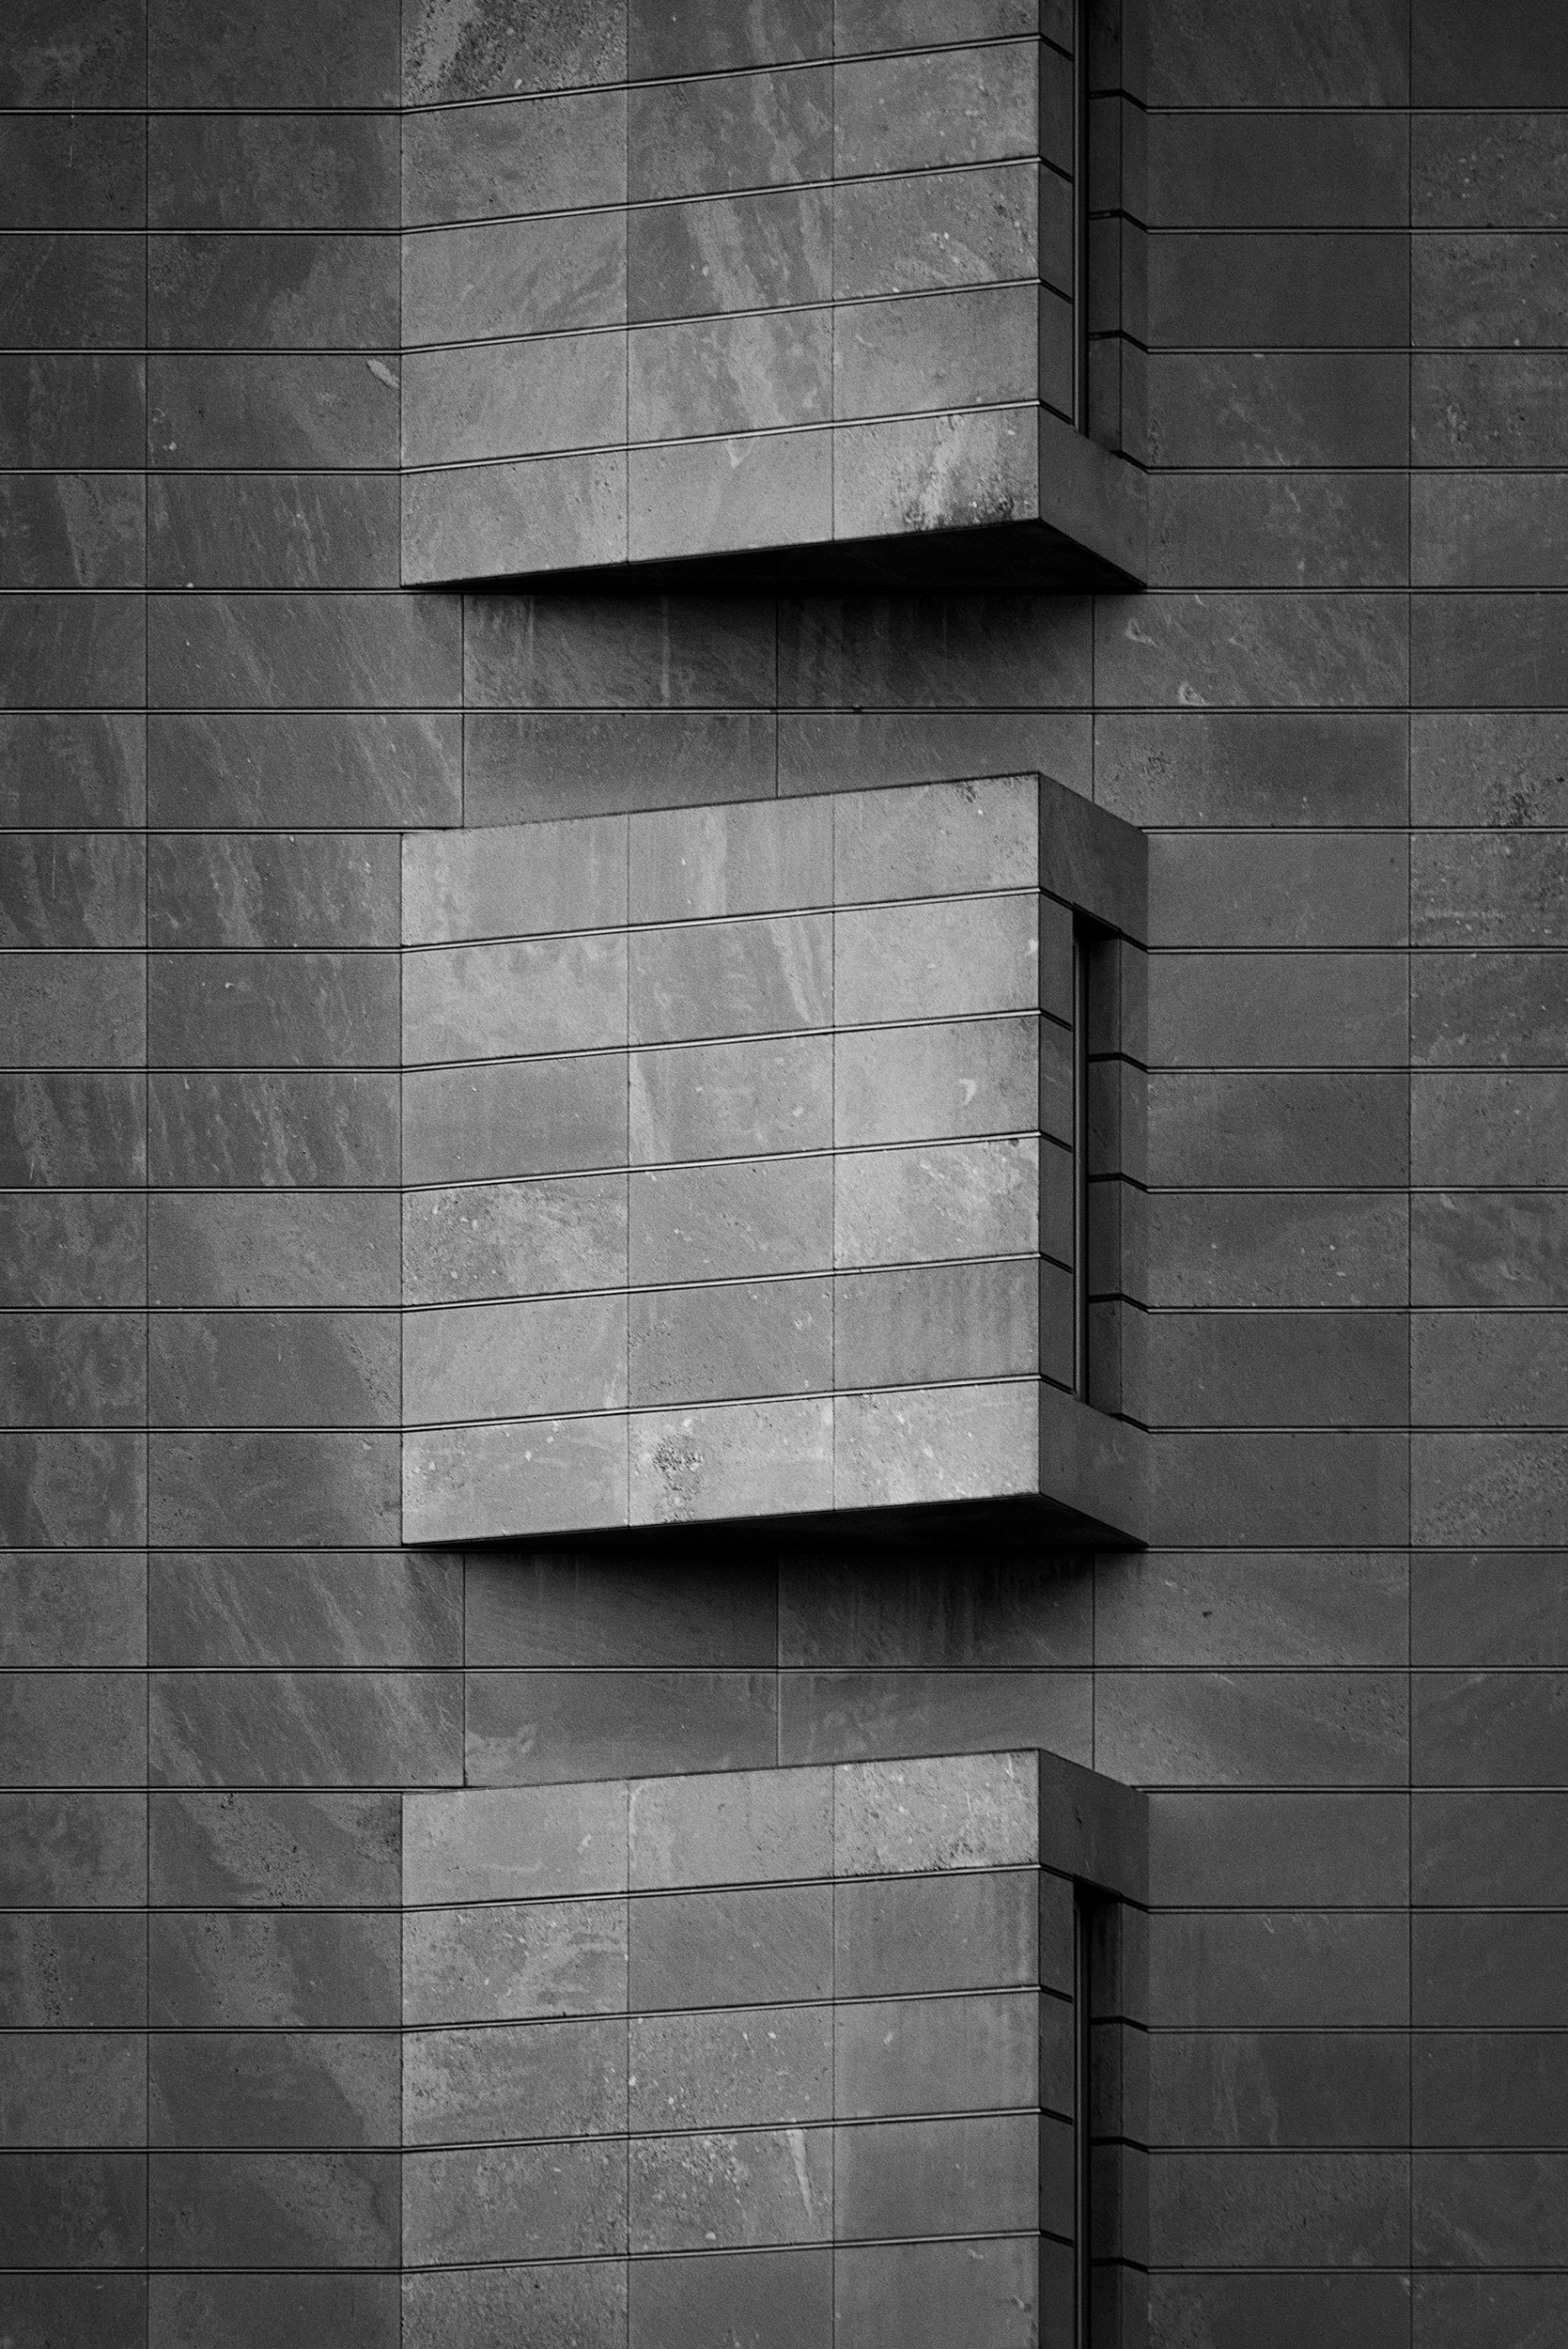 Bundespresseamt, Berlin - Dirk Denninger - Black & White Fine Art Architecture Photography